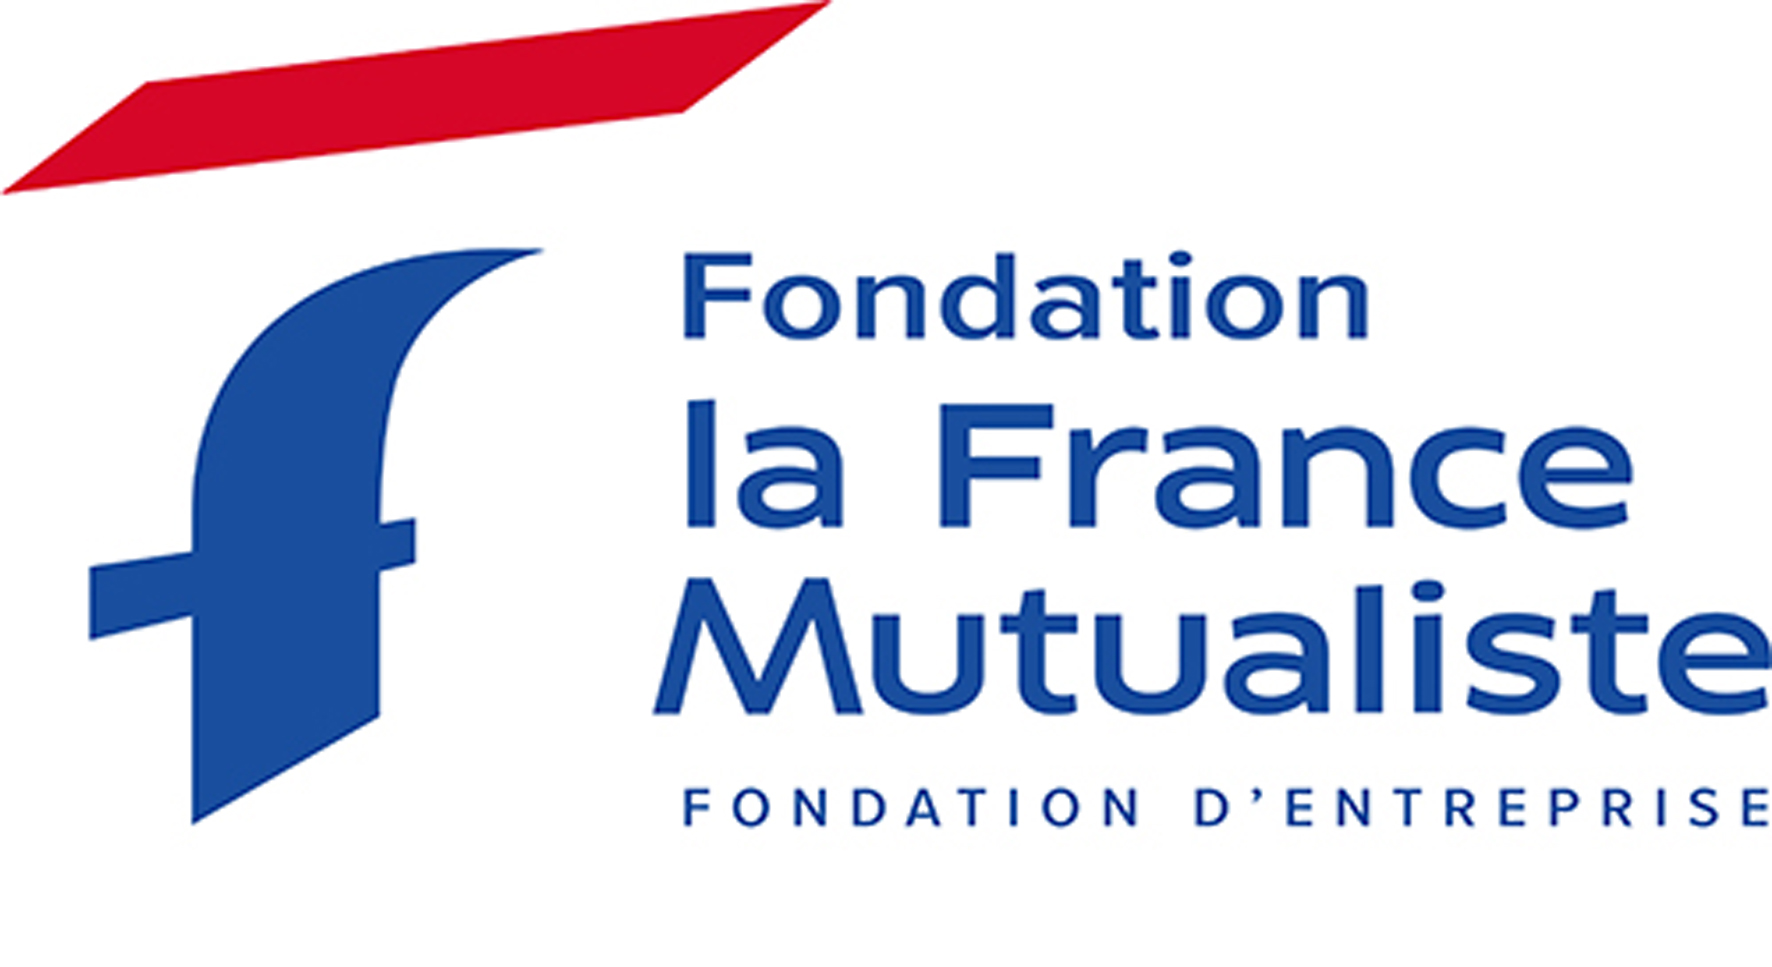 Fondation LFM logo